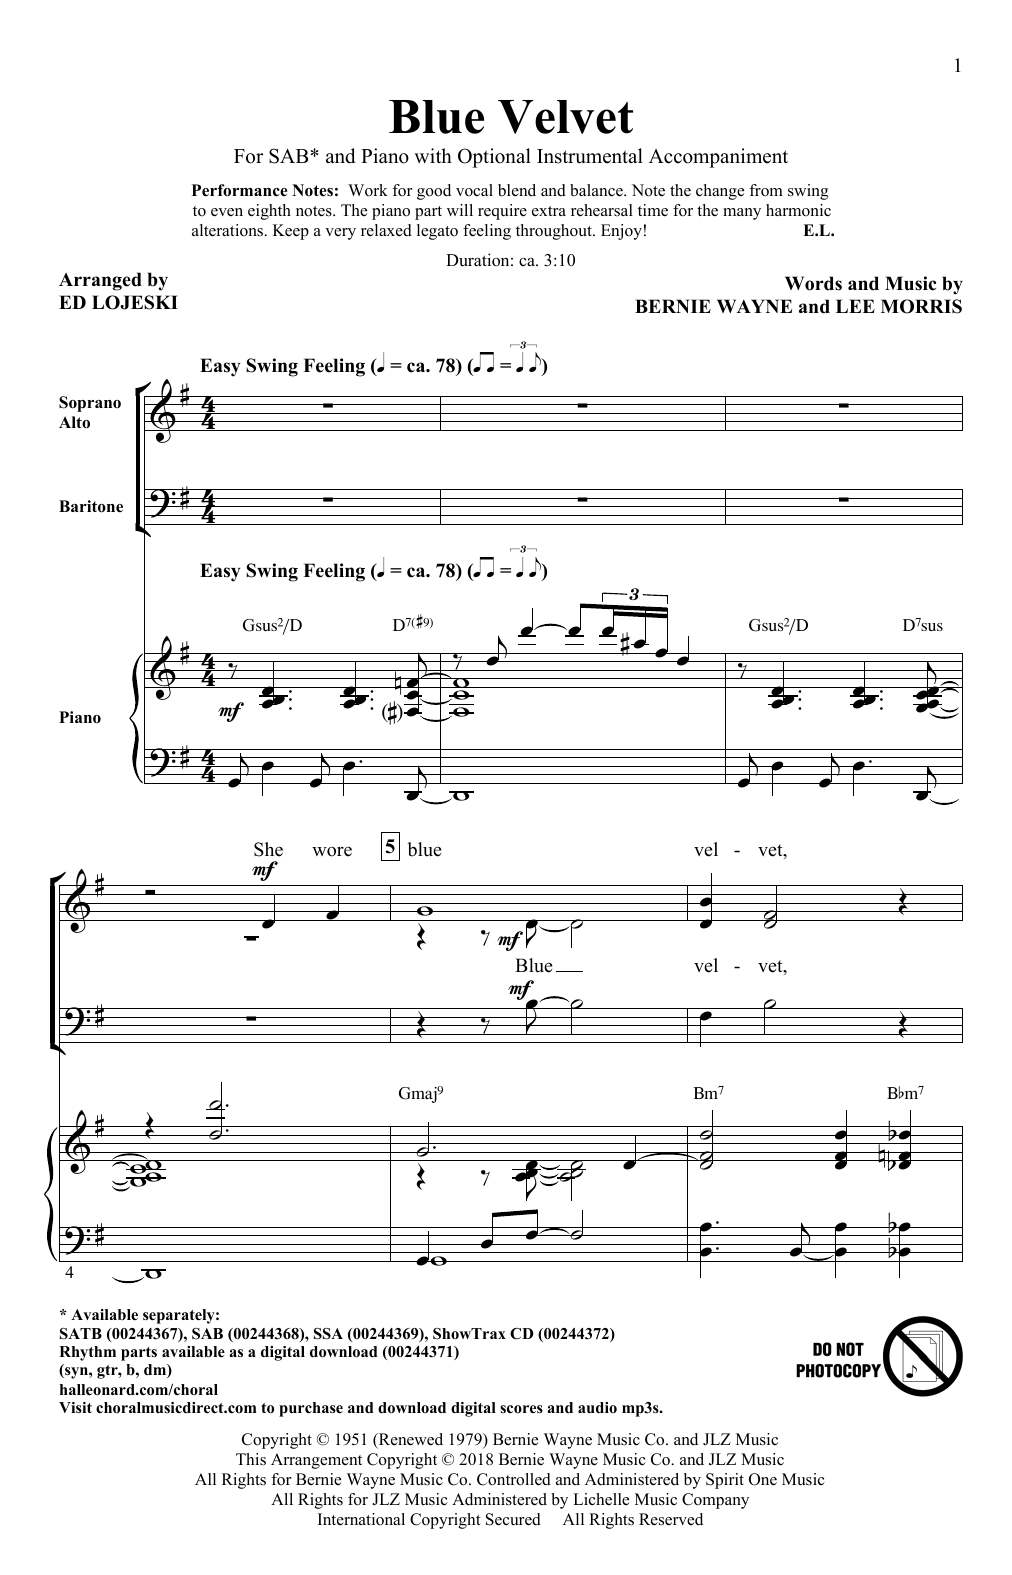 Ed Lojeski Blue Velvet sheet music notes and chords arranged for SSA Choir